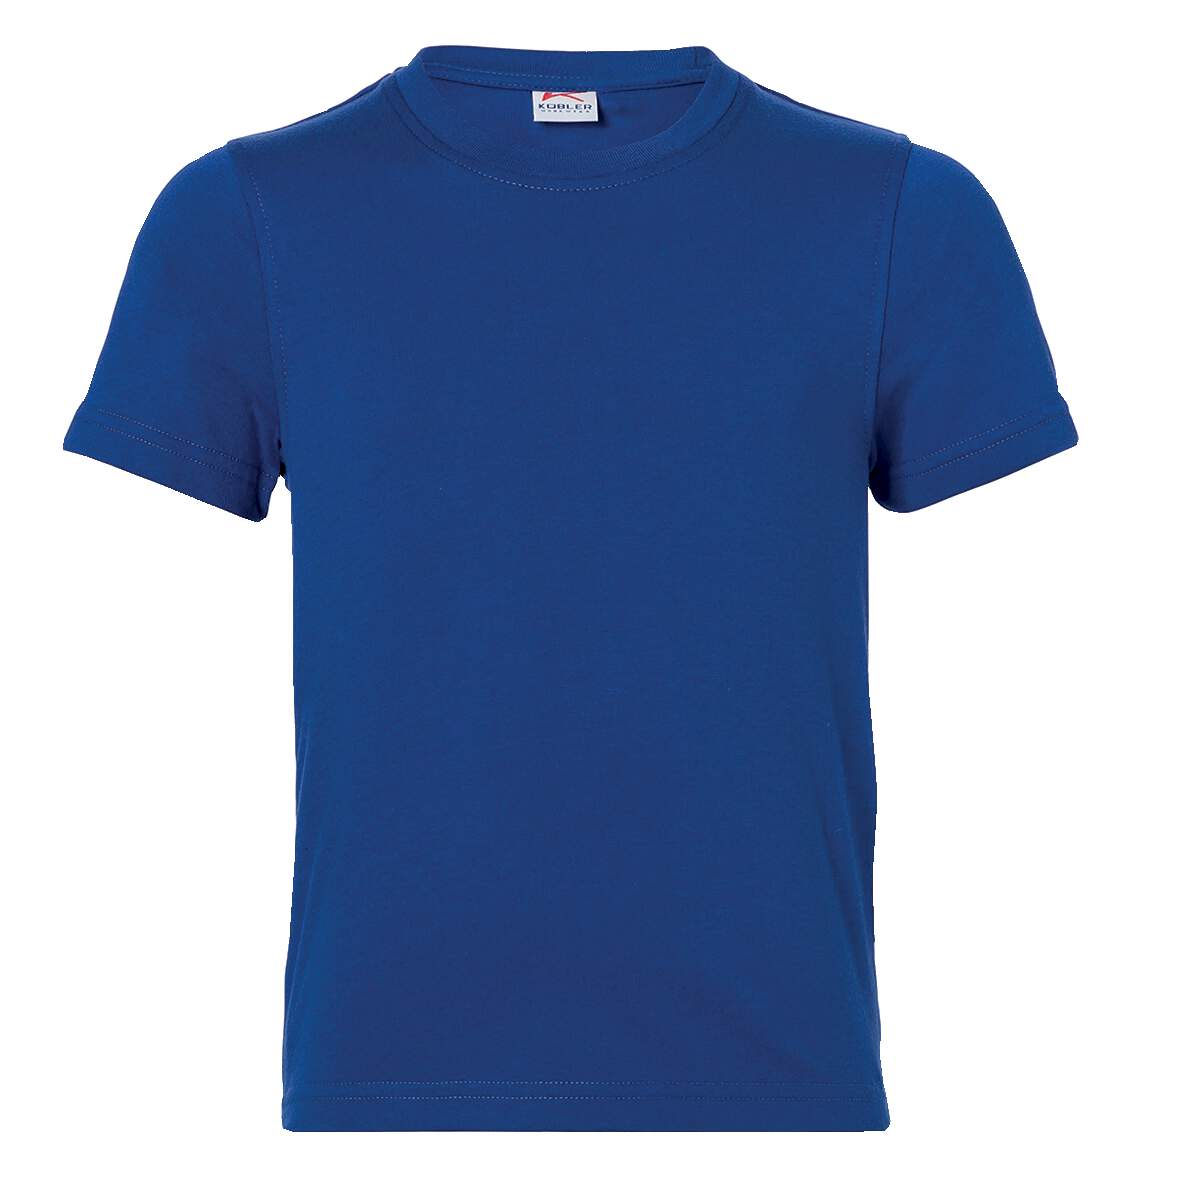 1253969 - T-Shirt Jungen Gr.104 kbl.blau